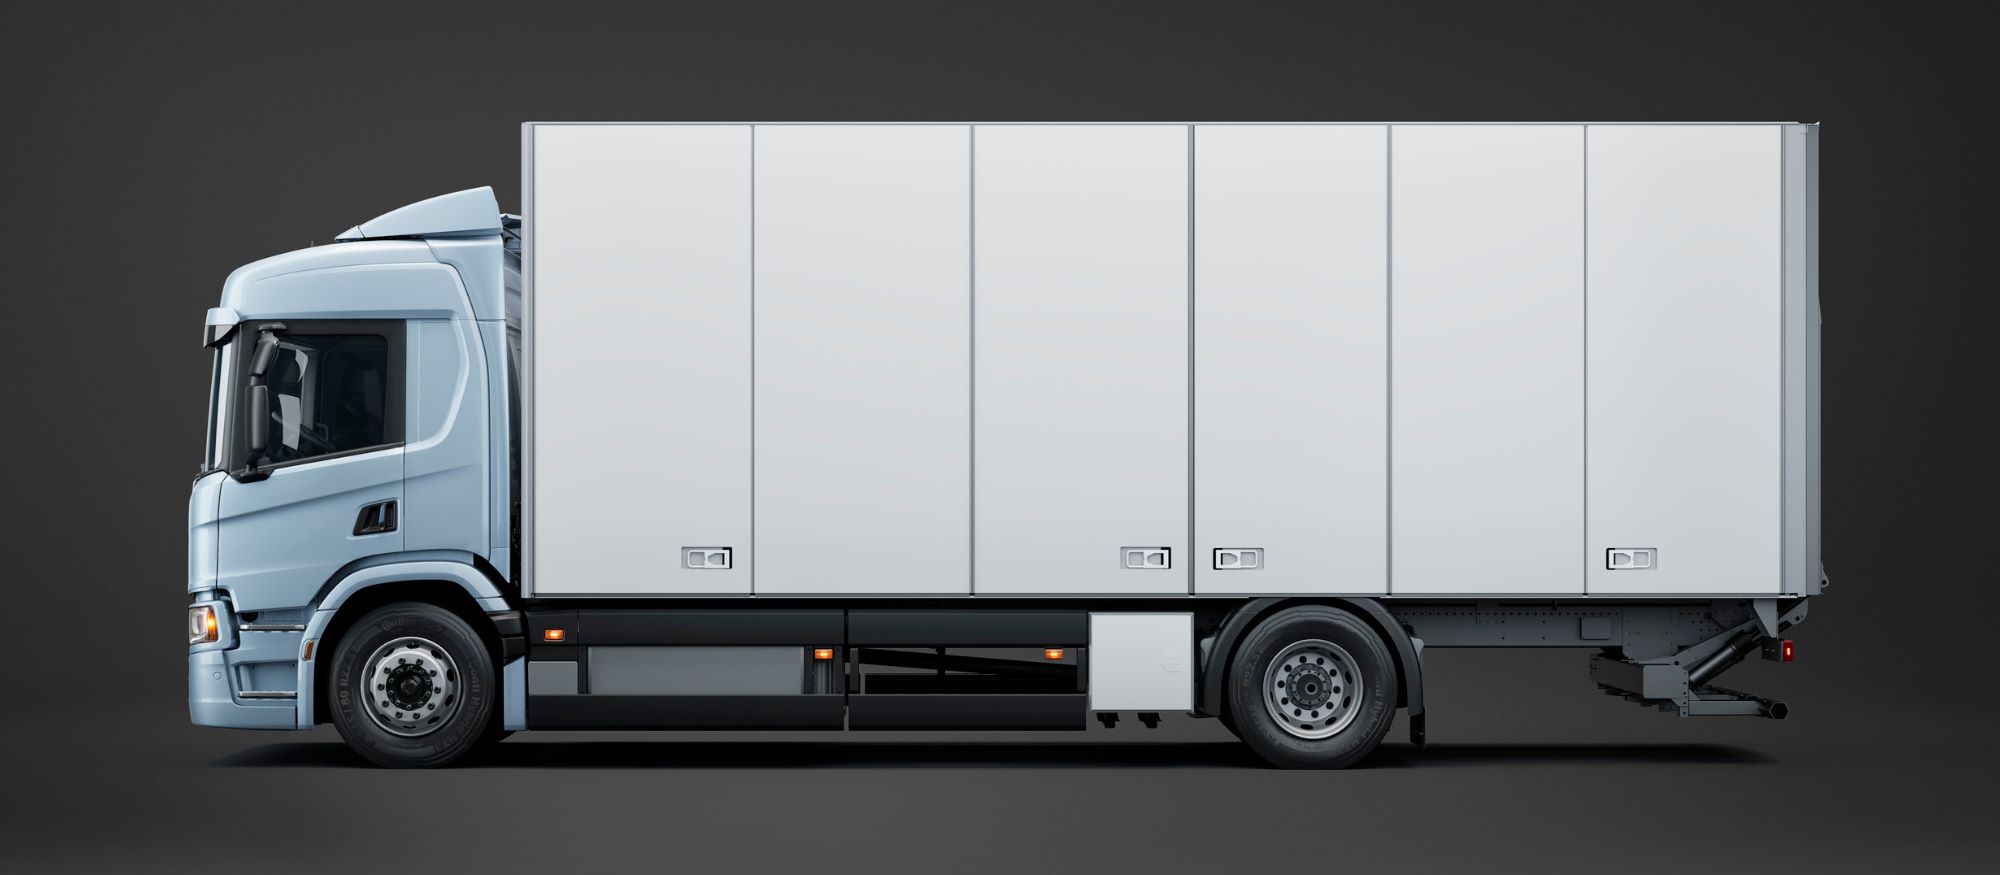 Scania apresenta novo caminhão elétrico com autonomia de 520 km